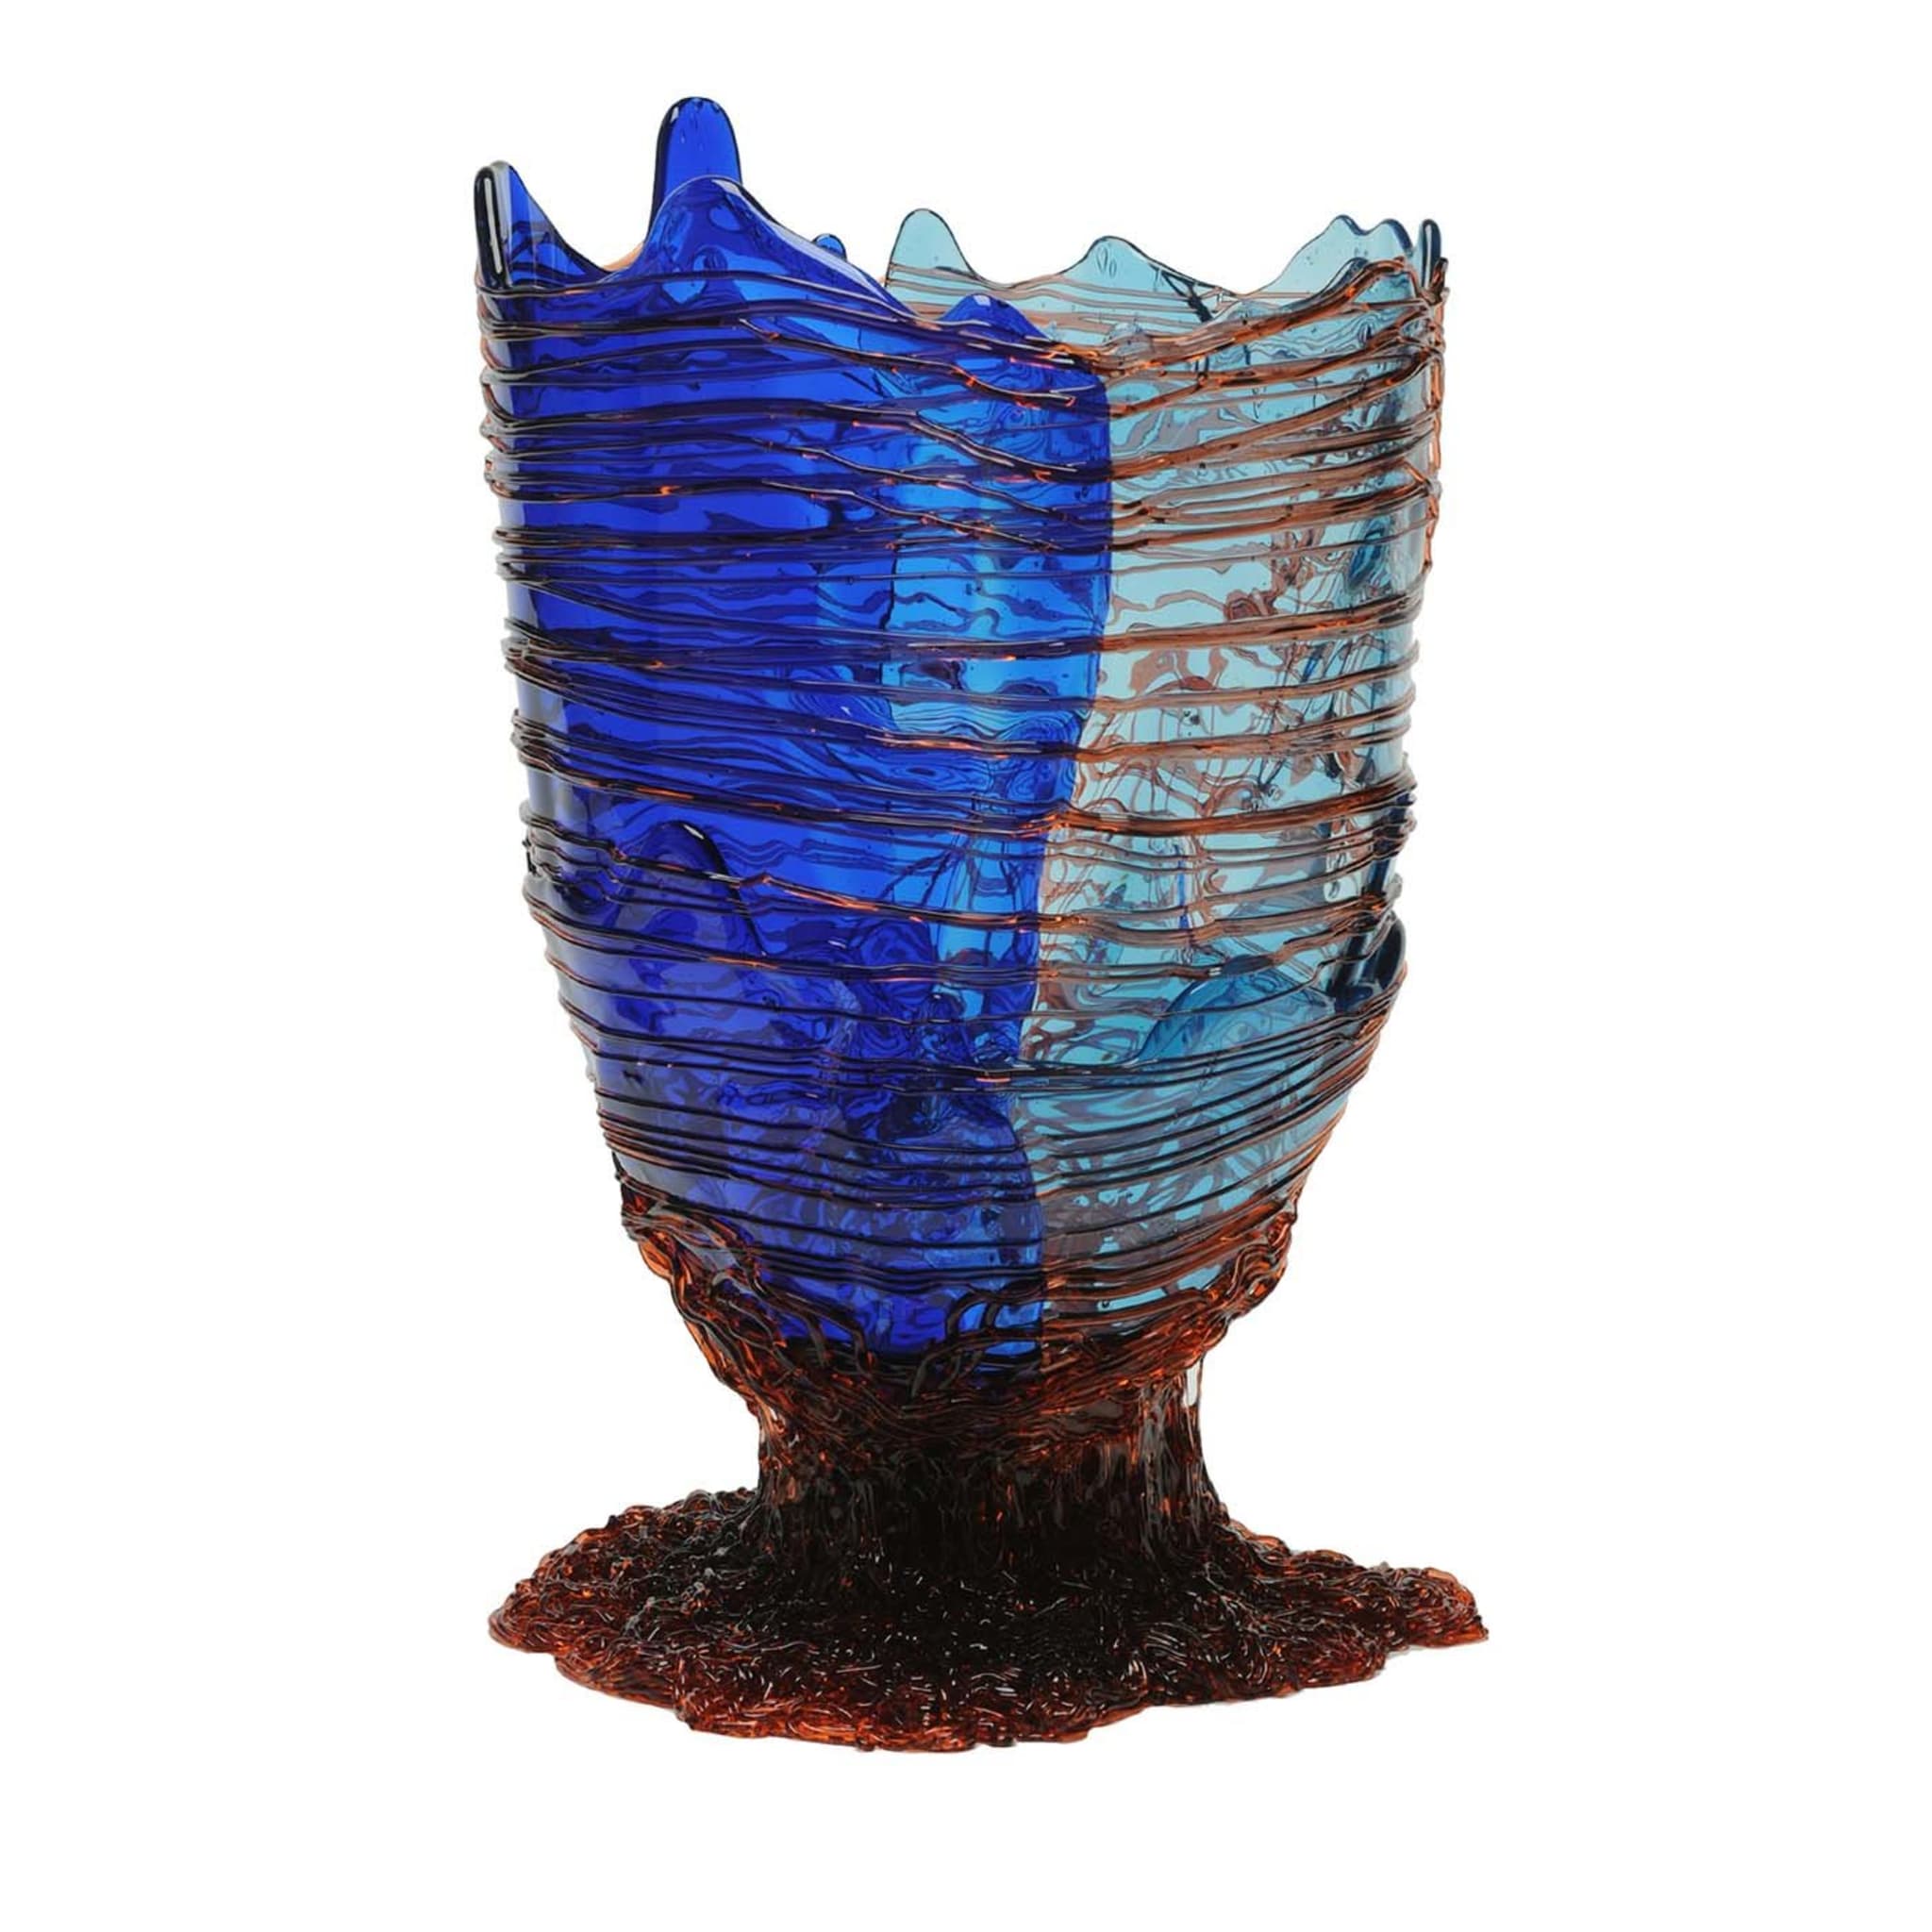 Große blaue und graue spaghetti vase von Gaetano Pesce - Hauptansicht